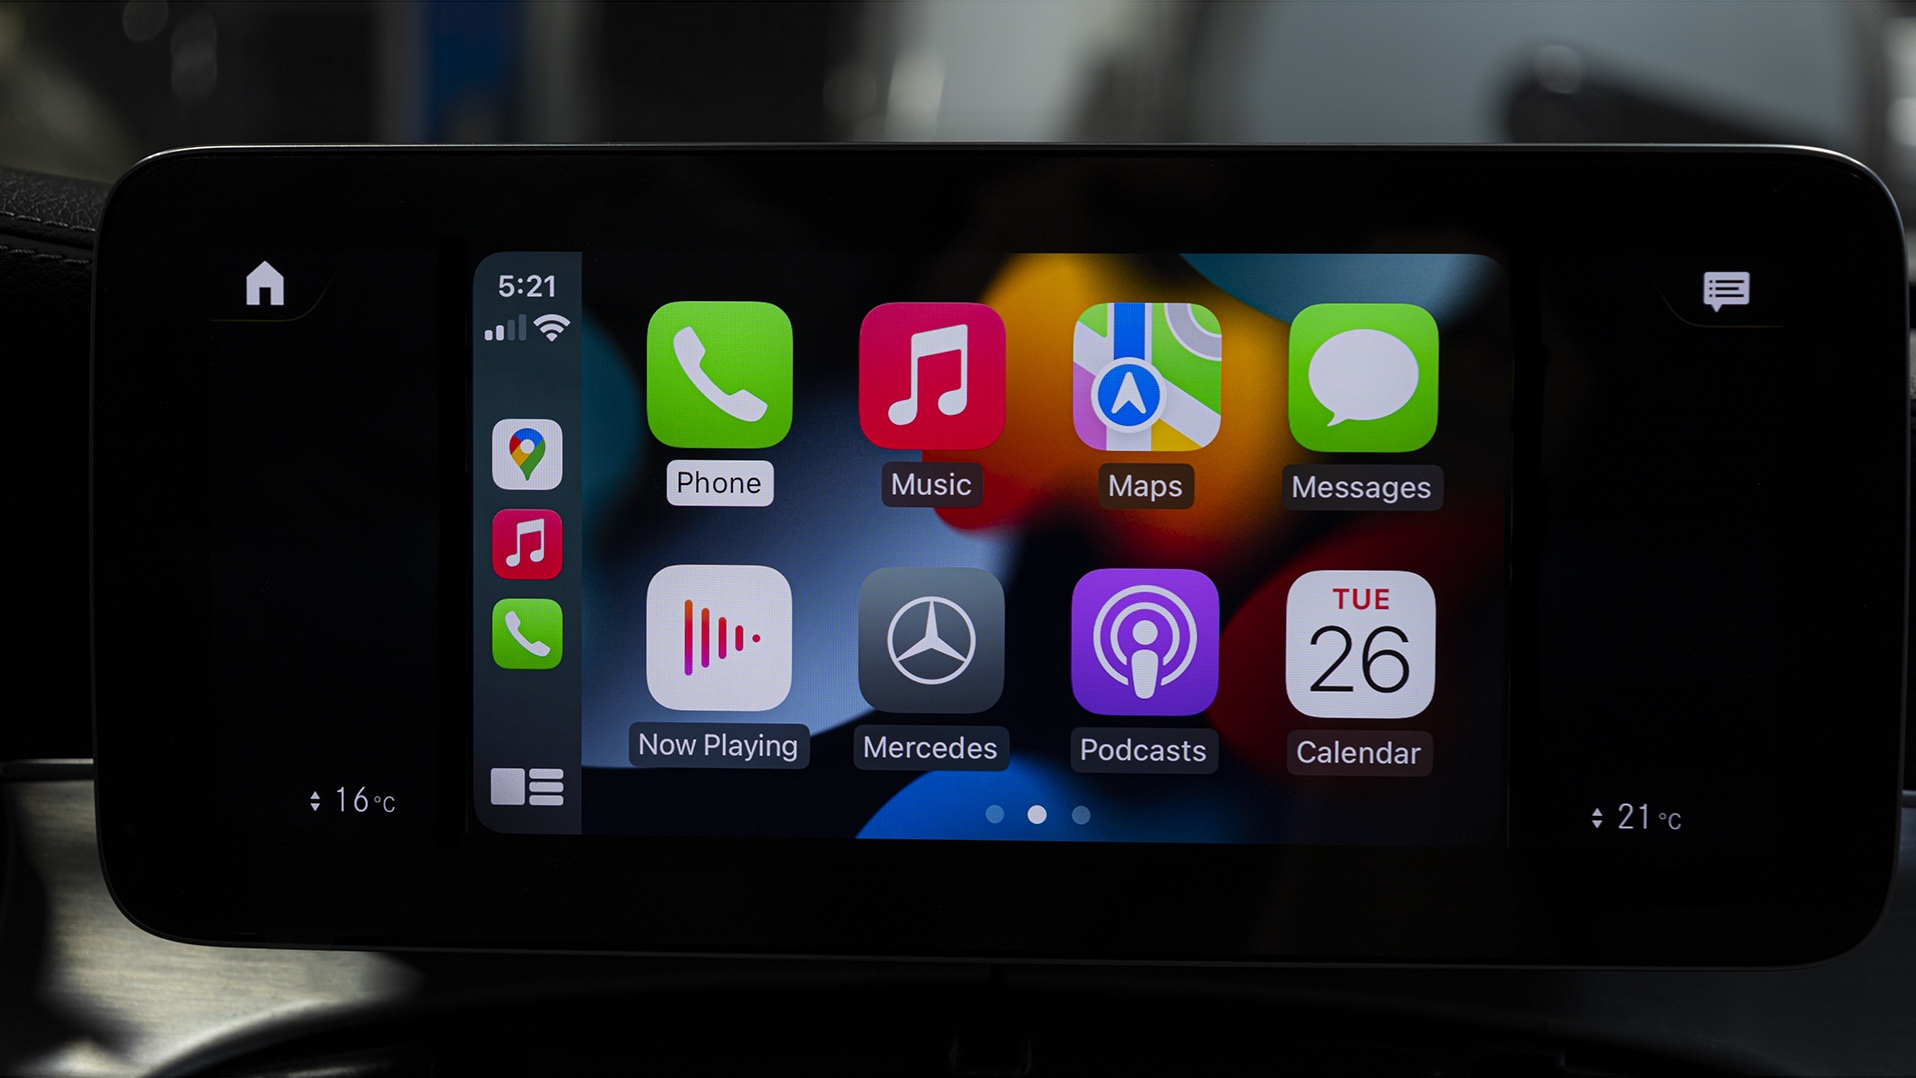 Apple Carplay for Mercedes NTG 5.5 NTG 6.0 MBUX system –